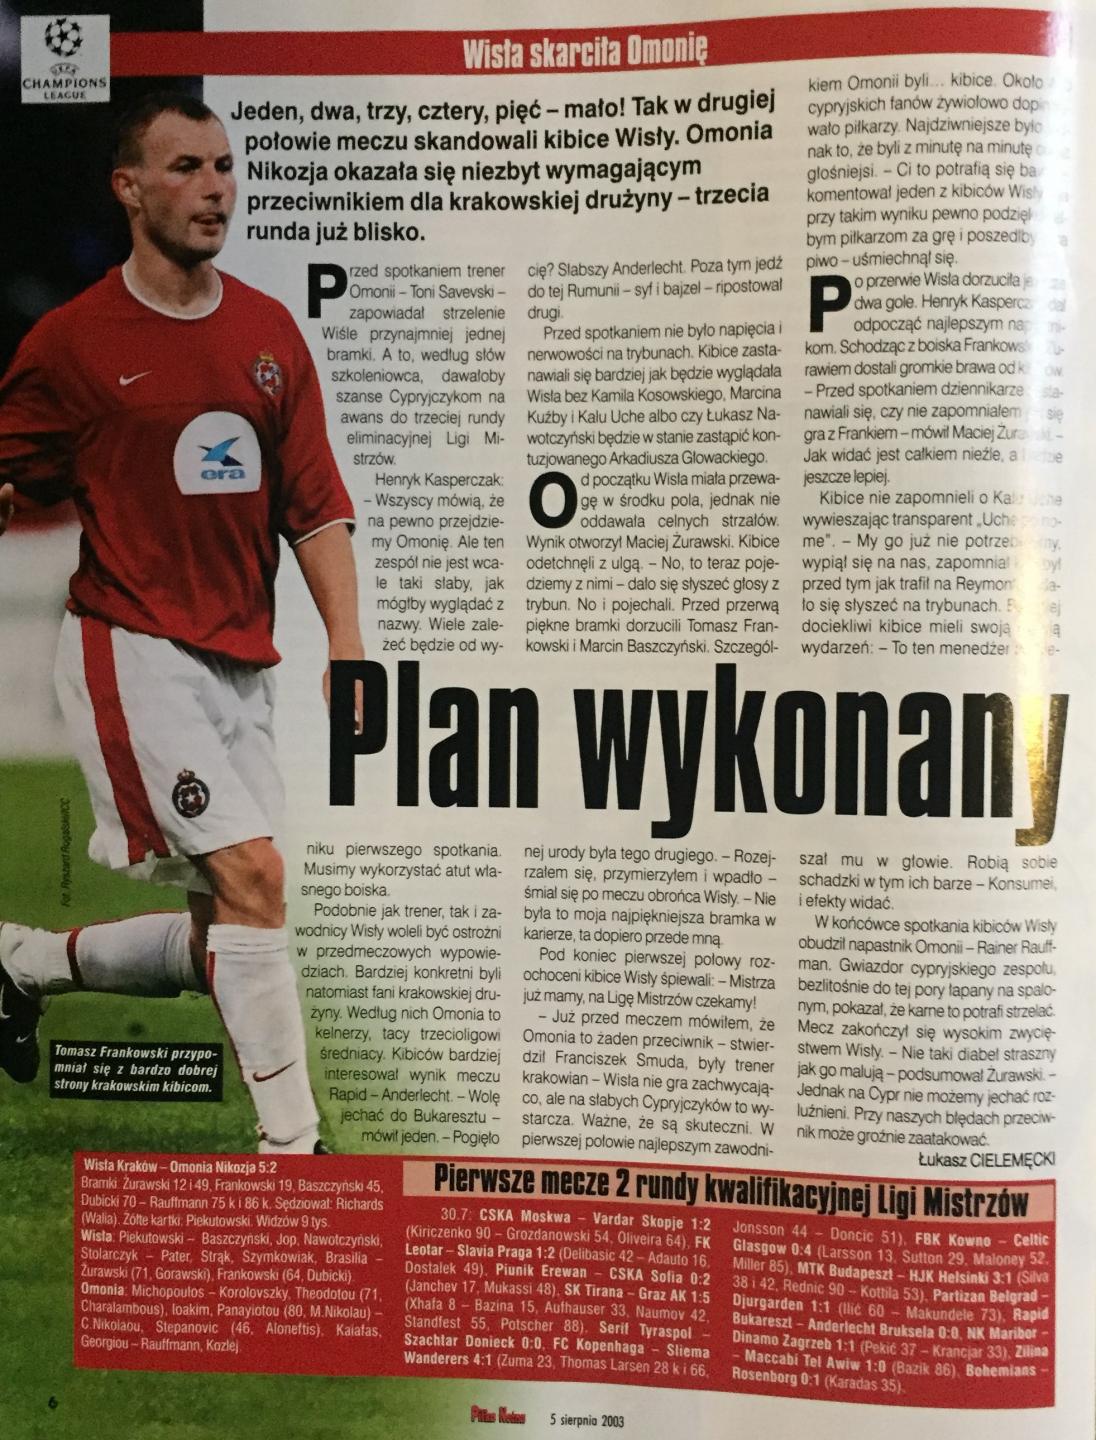 Piłka Nożna po meczu Wisła Kraków - Omonia Nikozja 5:2 (30.07.2003)